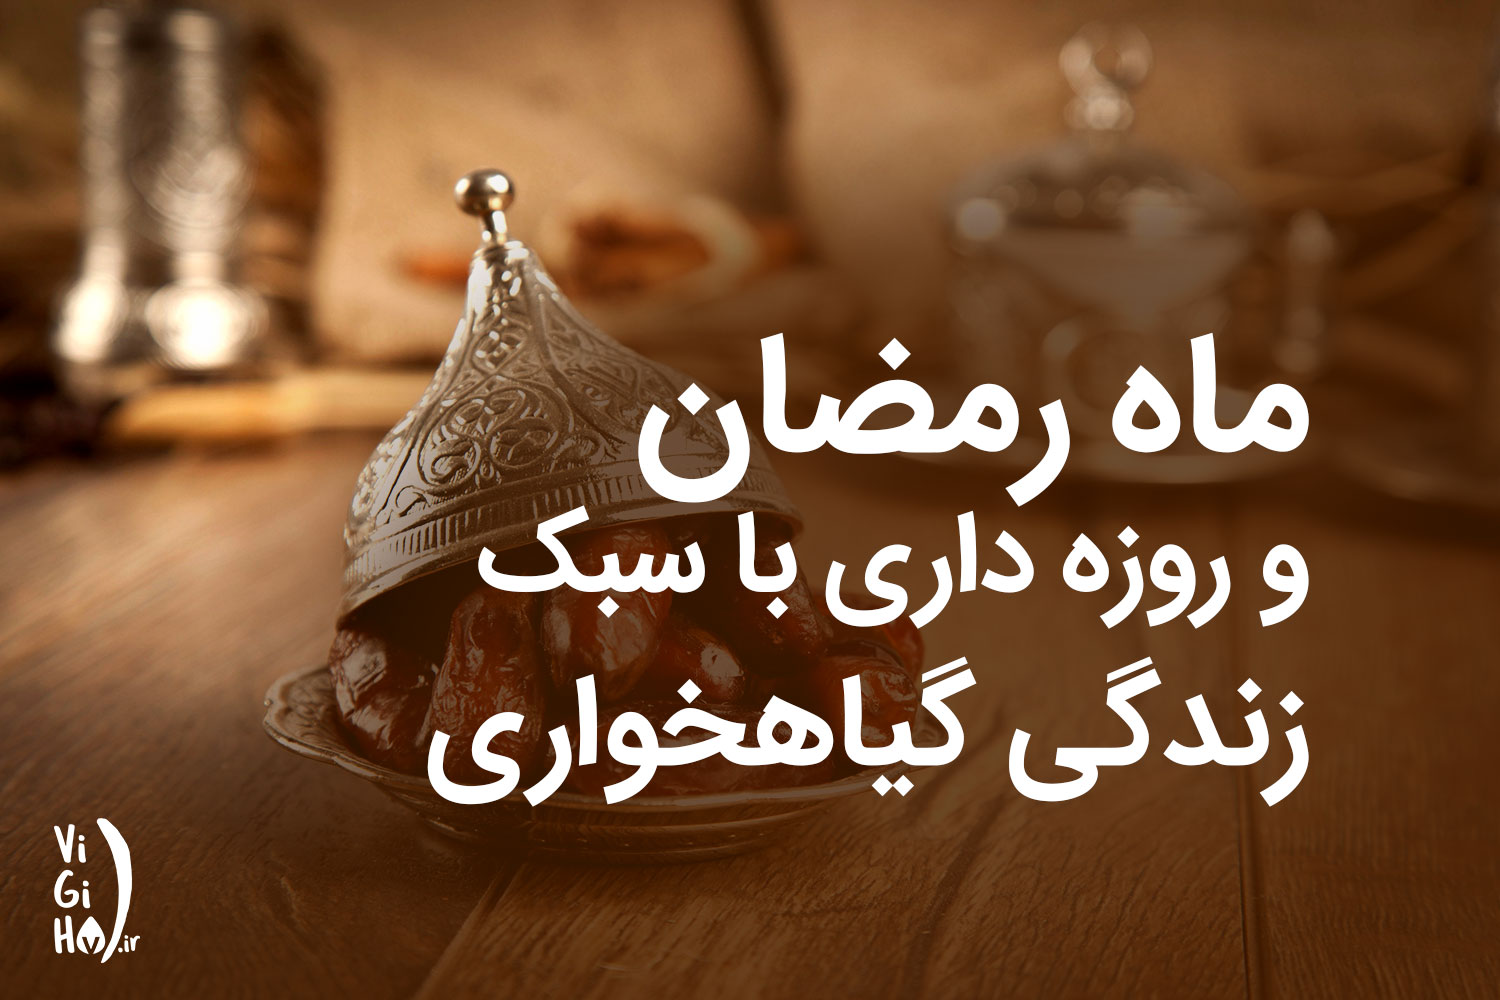 ماه رمضان و روزه داری با سبک گیاهخواری و وگان؛ لیست غذاها و نکاتی برای سلامت